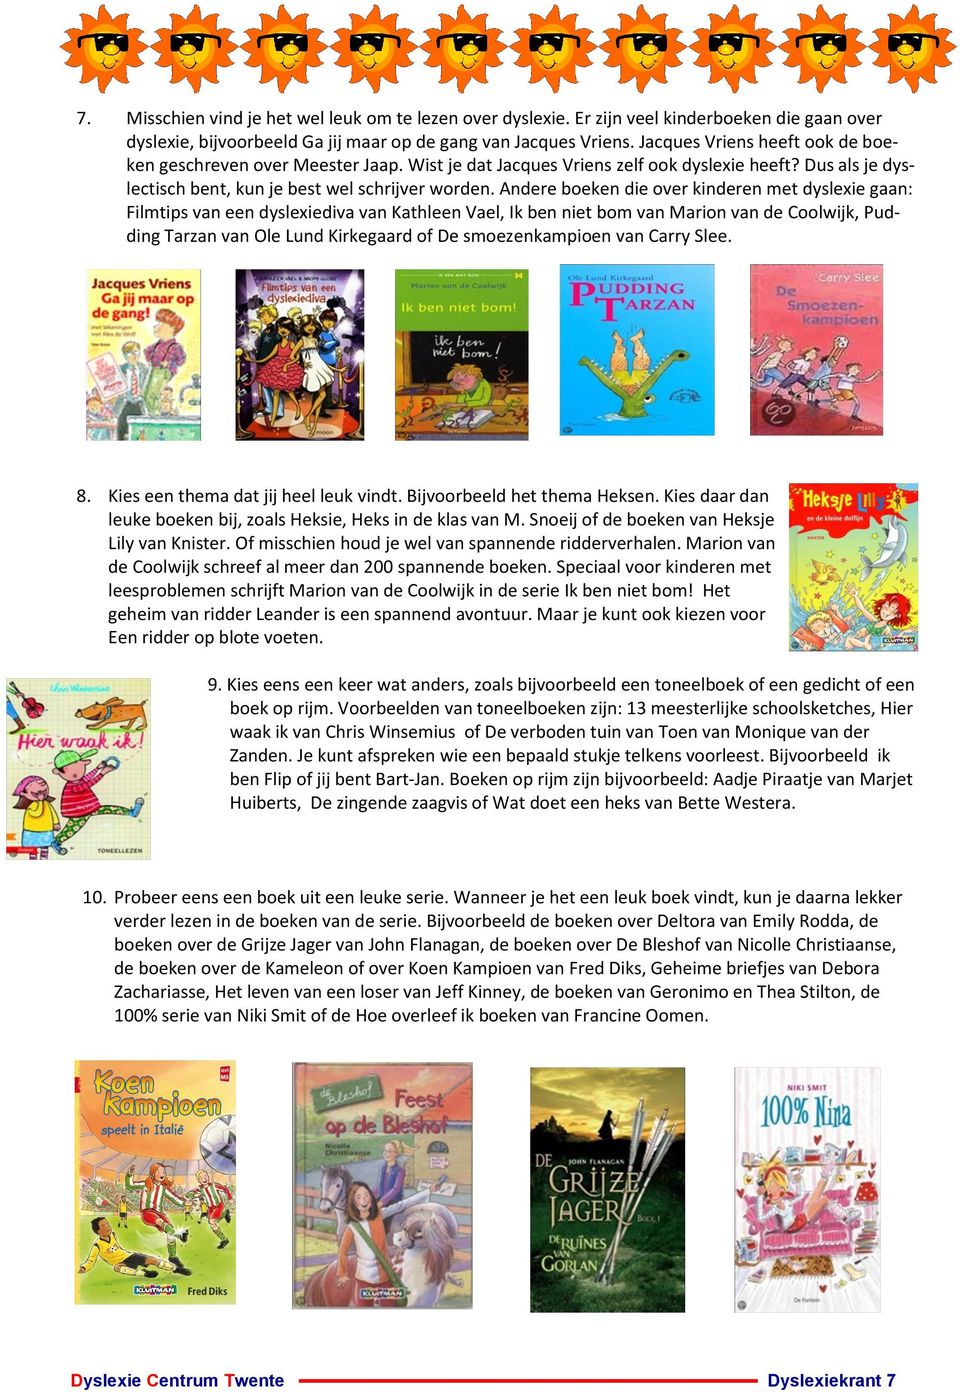 Andere boeken die over kinderen met dyslexie gaan: Filmtips van een dyslexiediva van Kathleen Vael, Ik ben niet bom van Marion van de Coolwijk, Pudding Tarzan van Ole Lund Kirkegaard of De